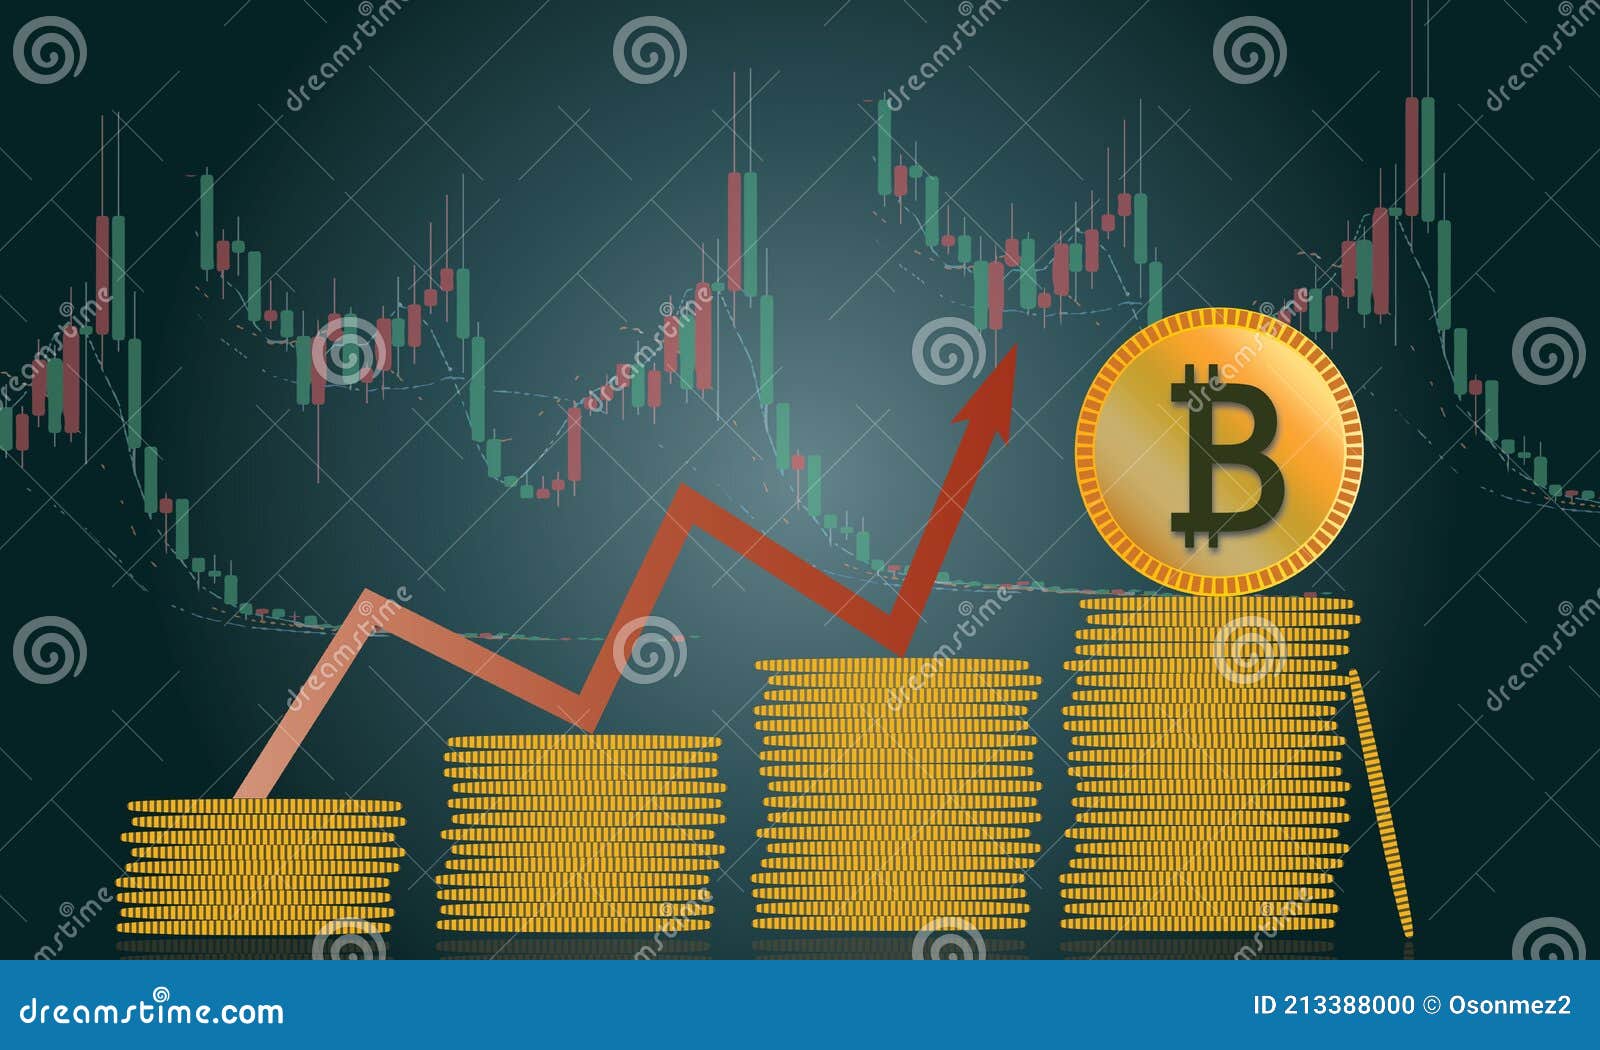 Bitcoin свечи биткоин цена в рублях на сегодня онлайн бесплатно